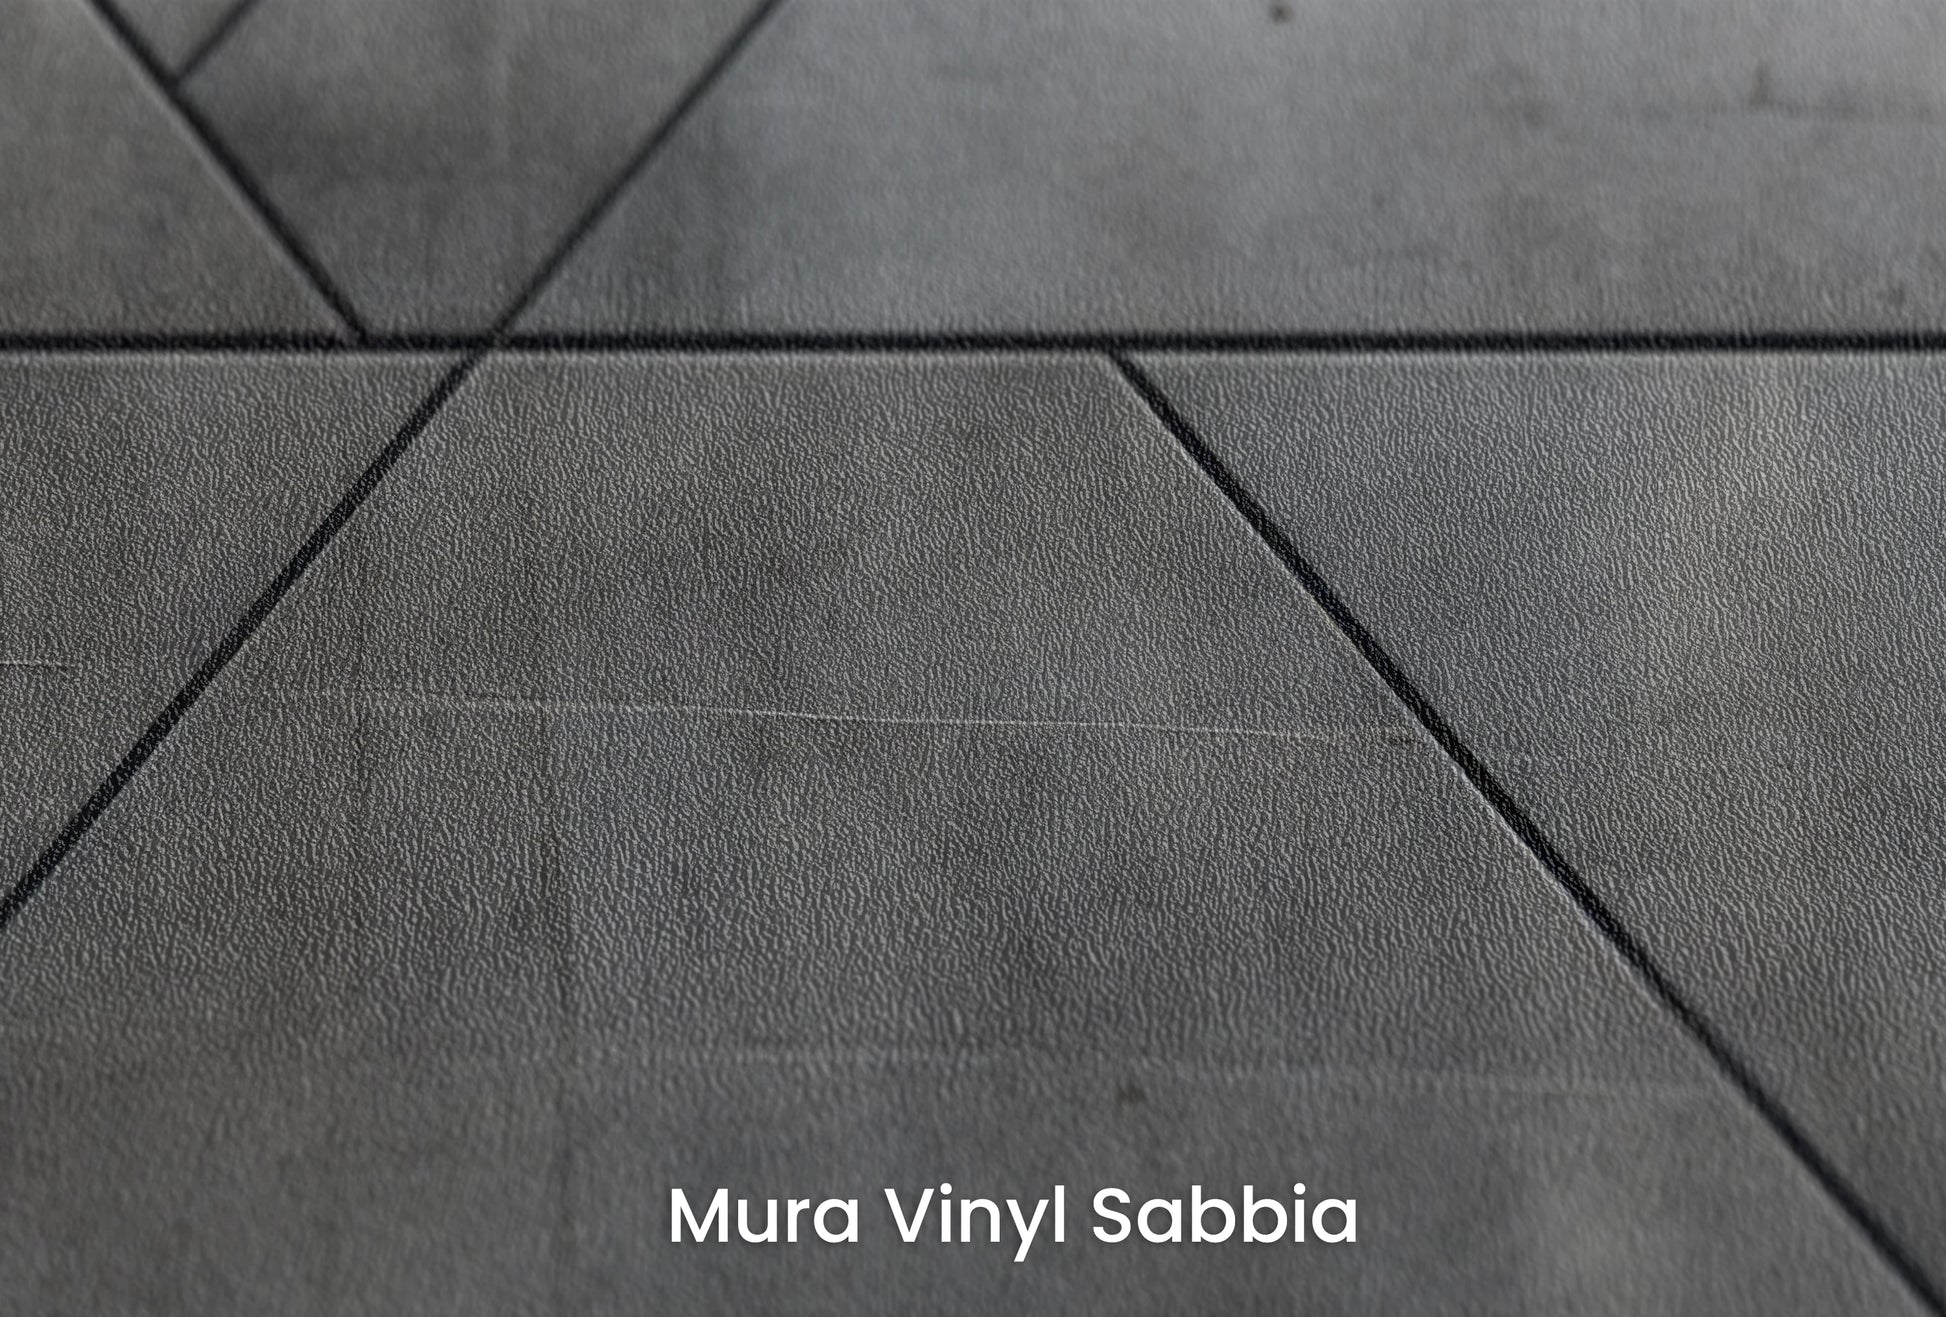 Zbliżenie na artystyczną fototapetę o nazwie Linear Intersection na podłożu Mura Vinyl Sabbia struktura grubego ziarna piasku.